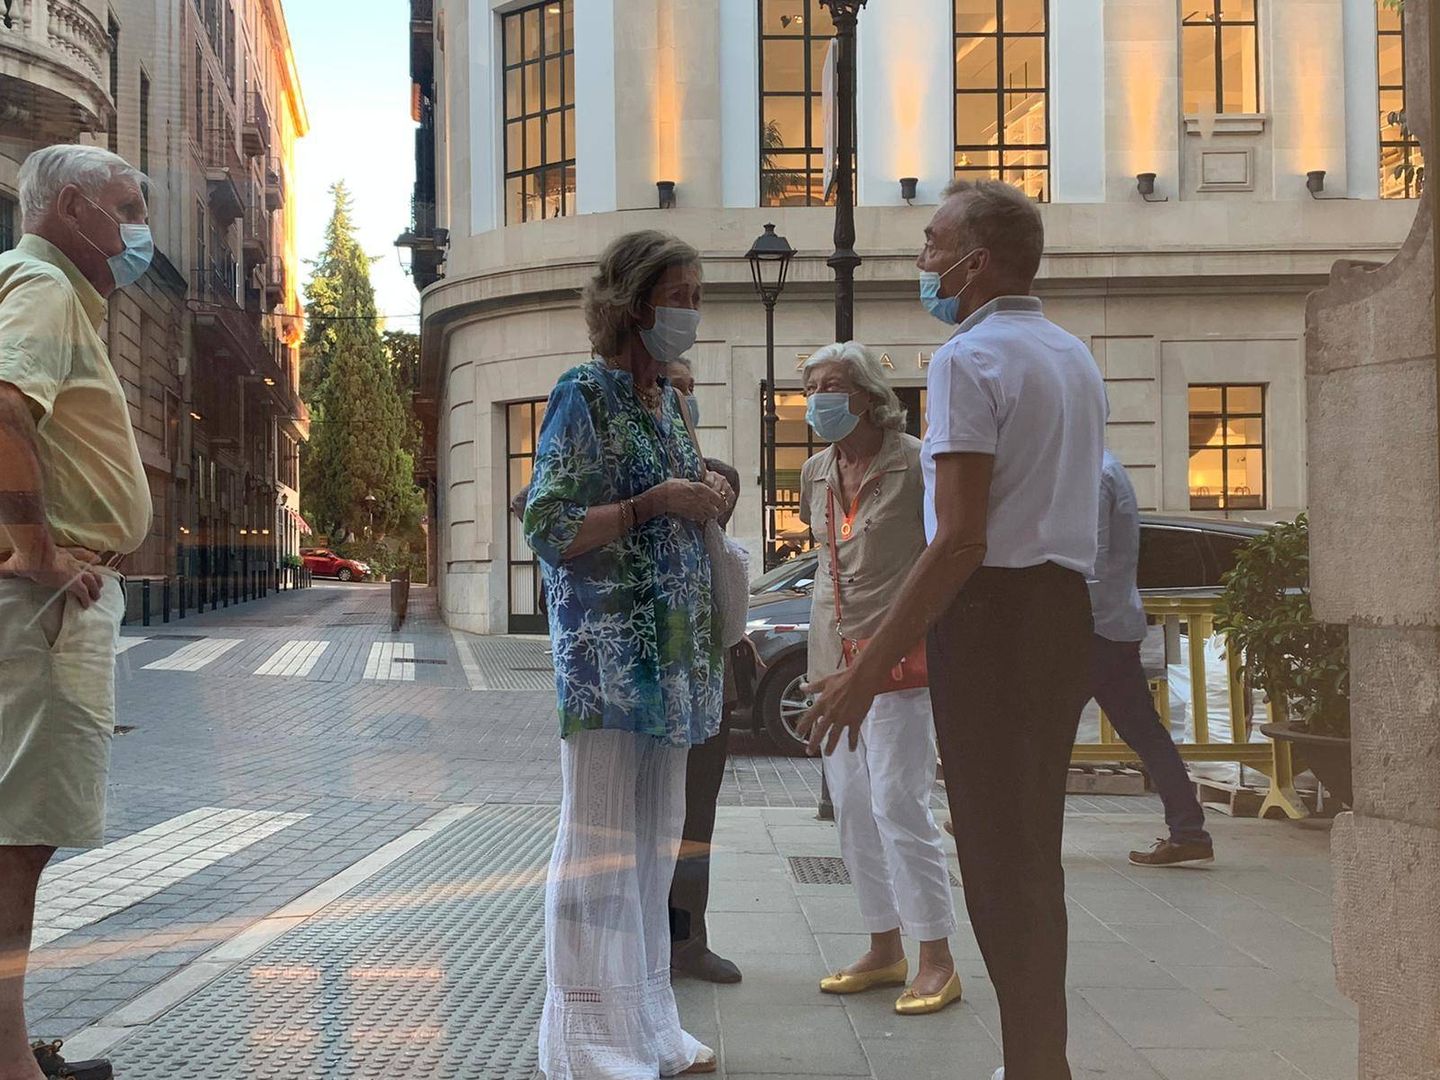 La Reina, conversando con uno de sus amigos en la calle.